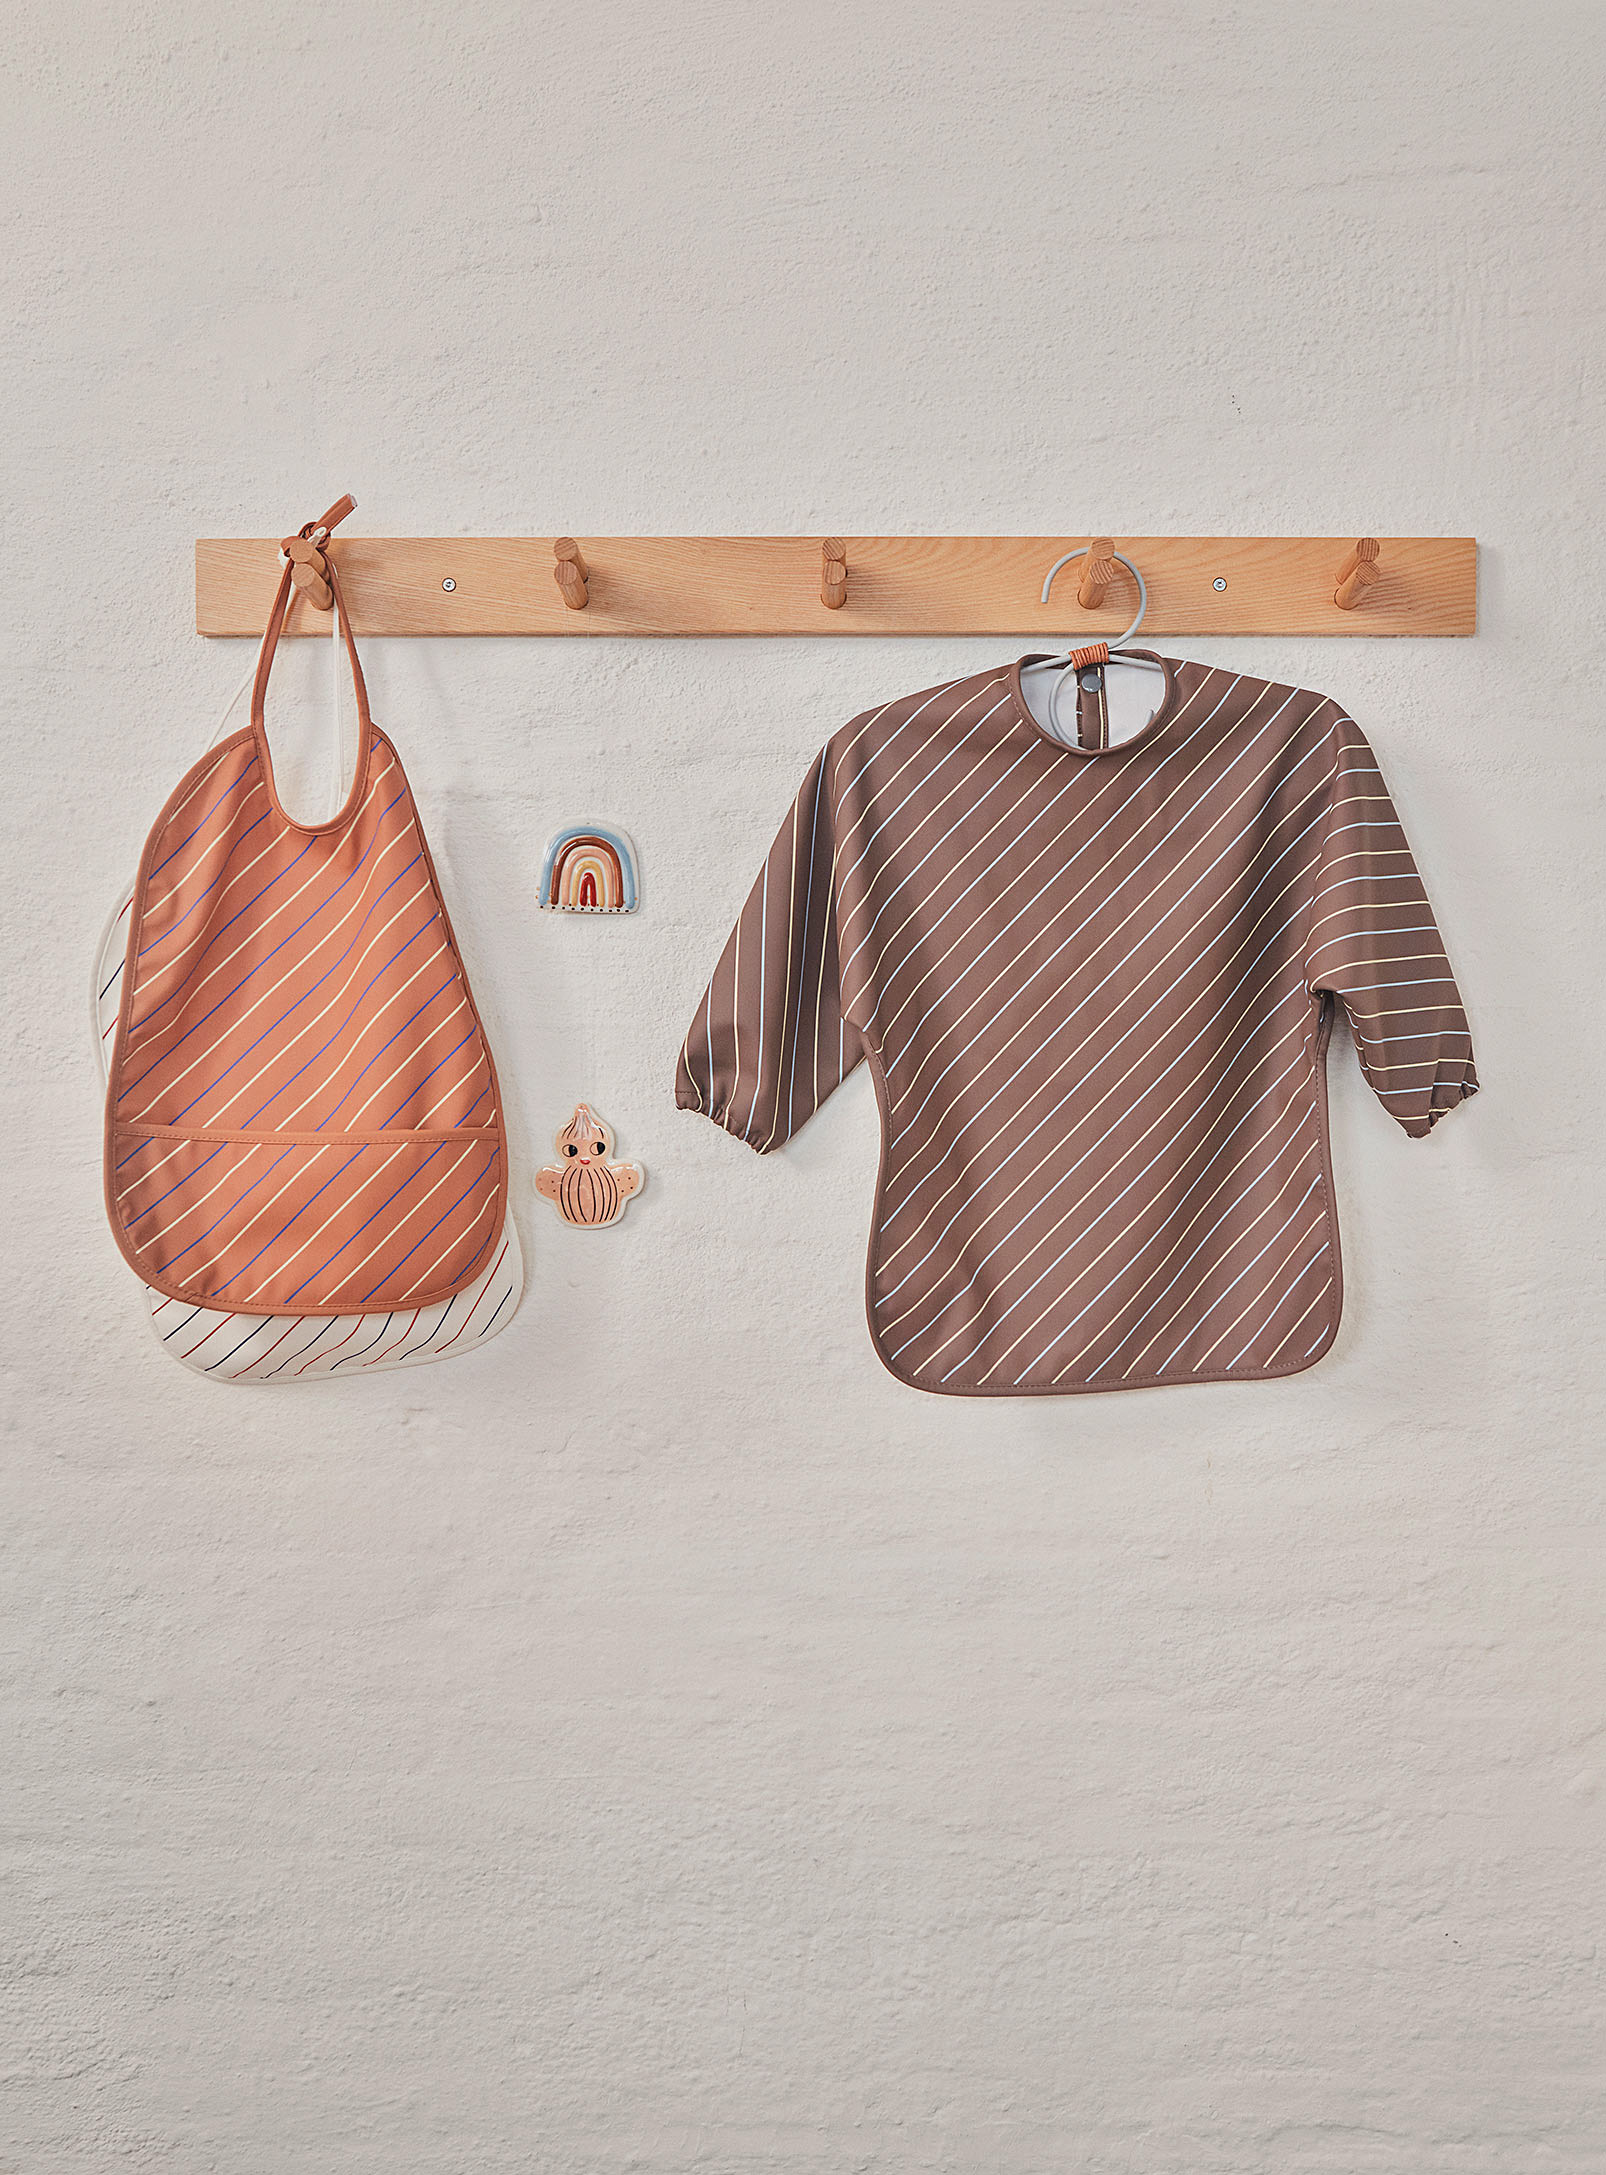 OYOY Living design - Double-prong wall-mounted coat rack